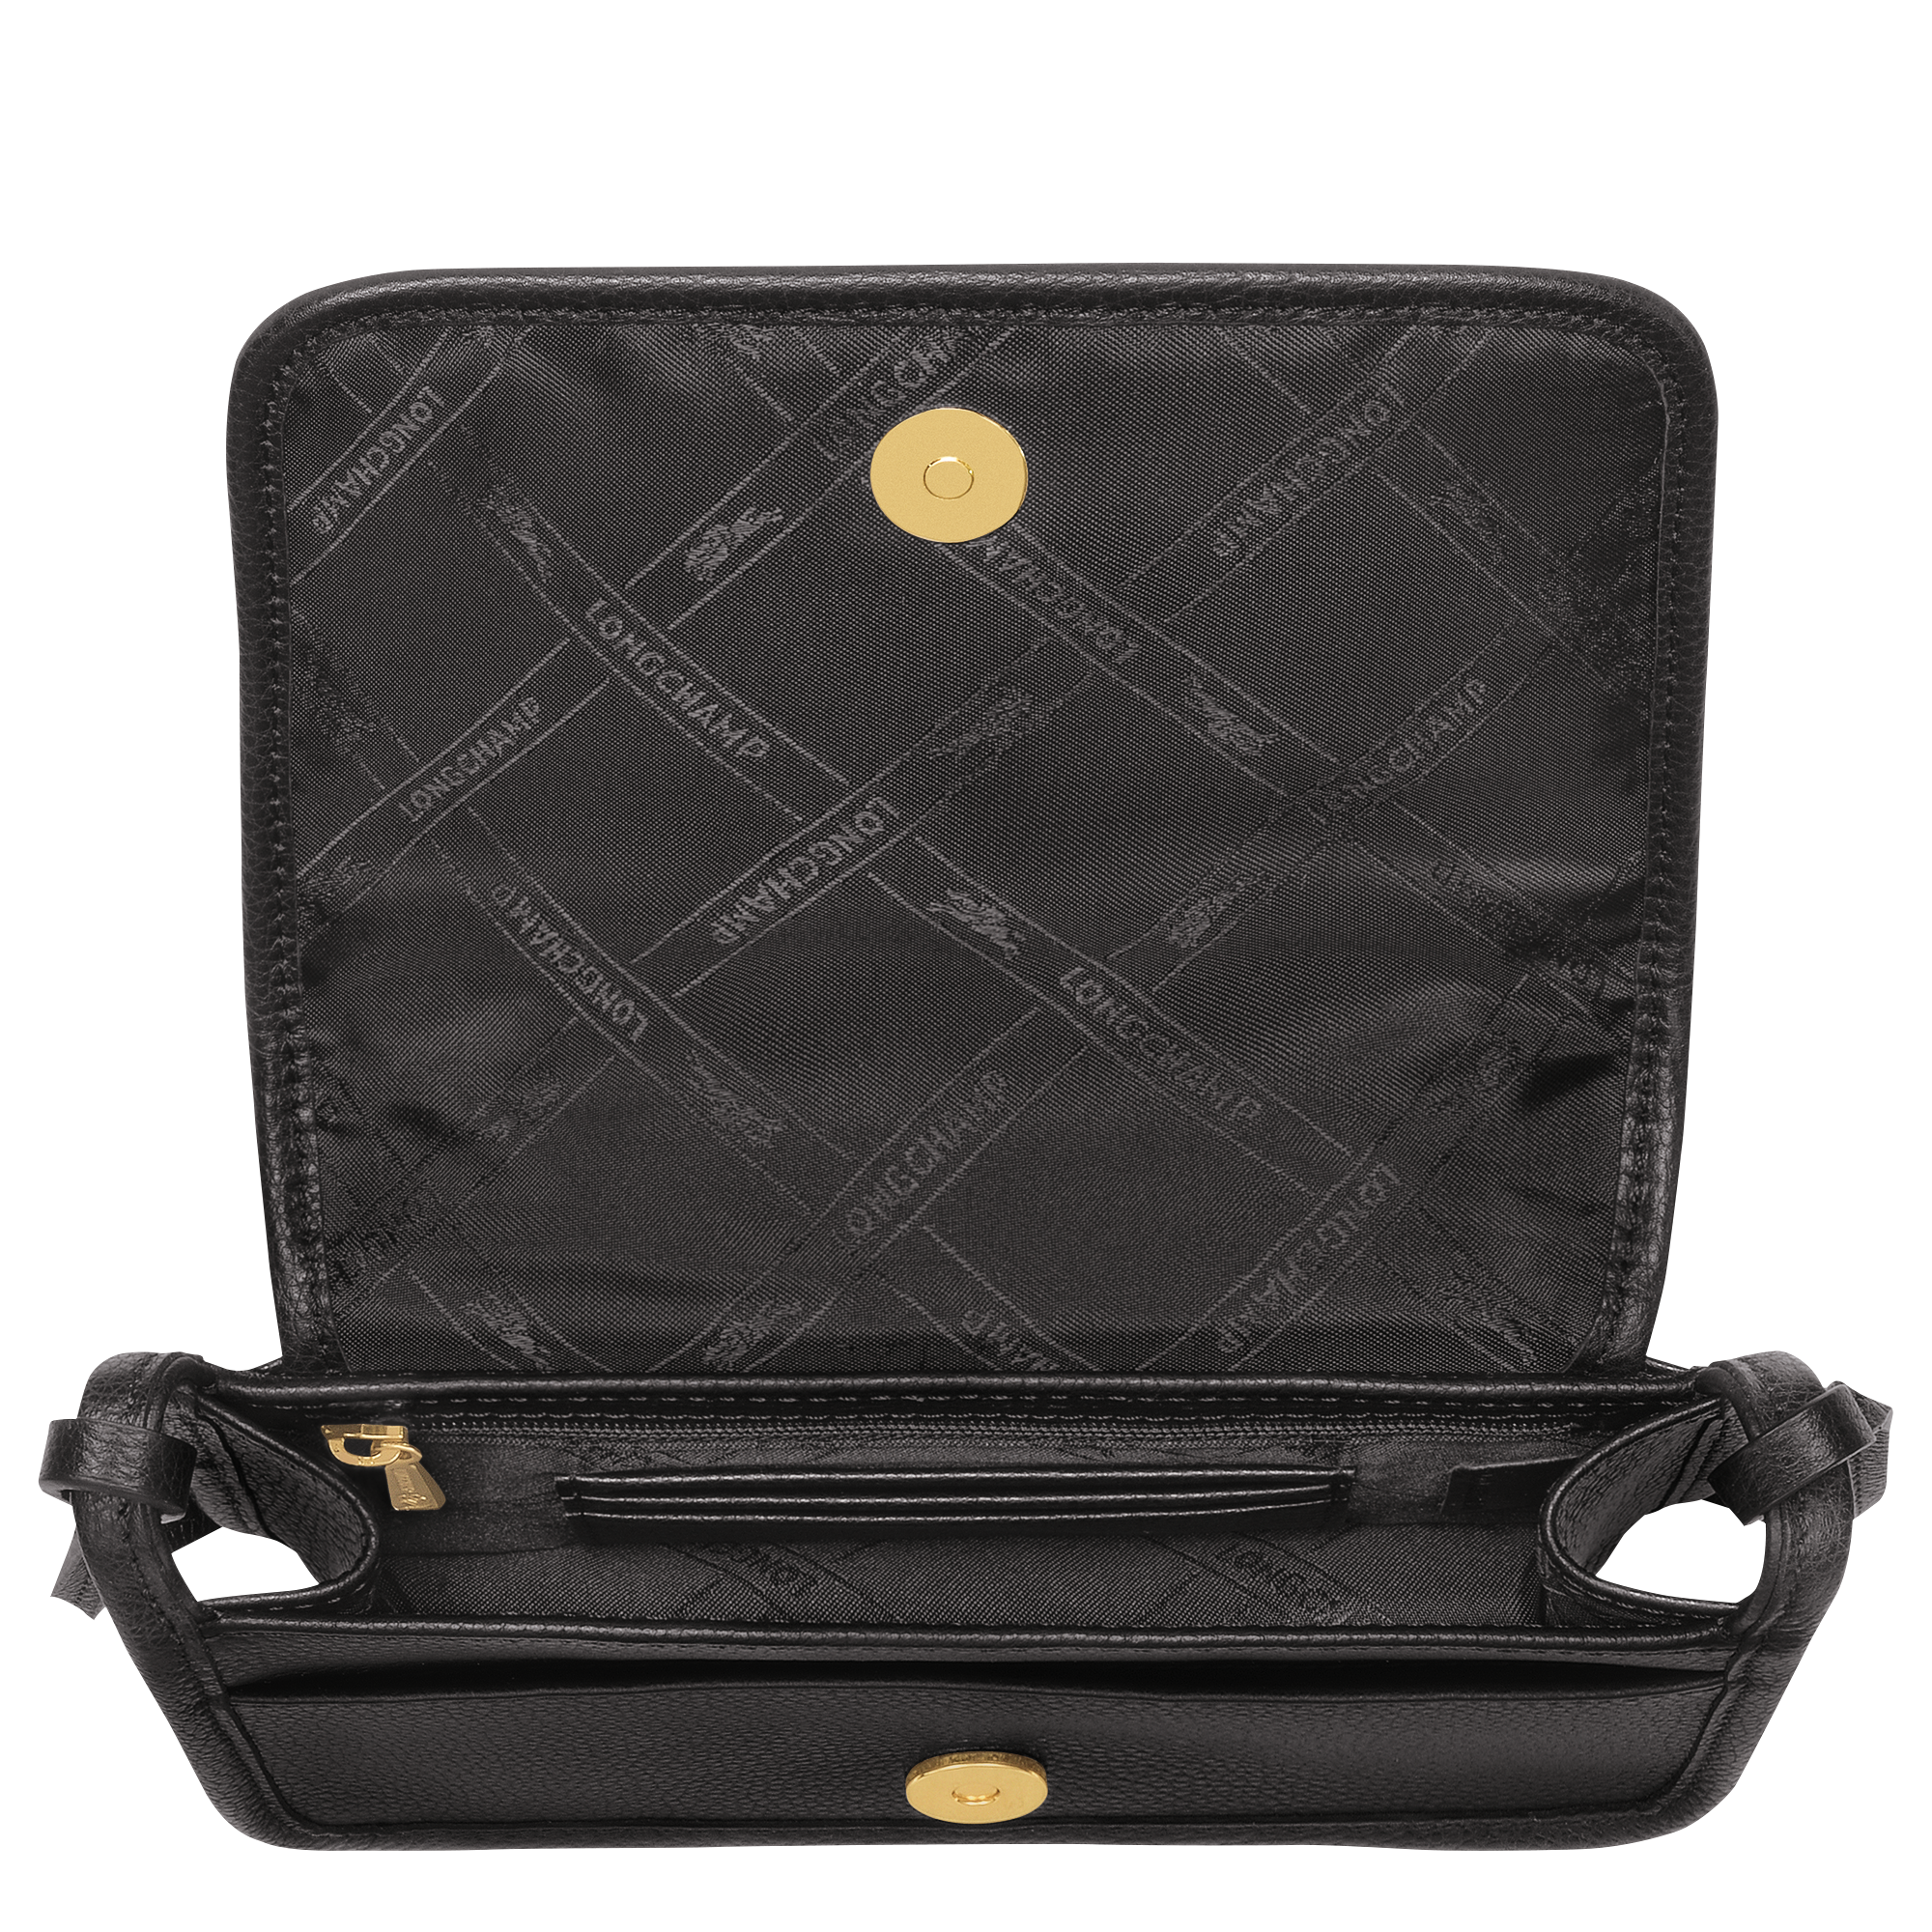 Longchamp 3D Pouch Black - Leather | Longchamp US